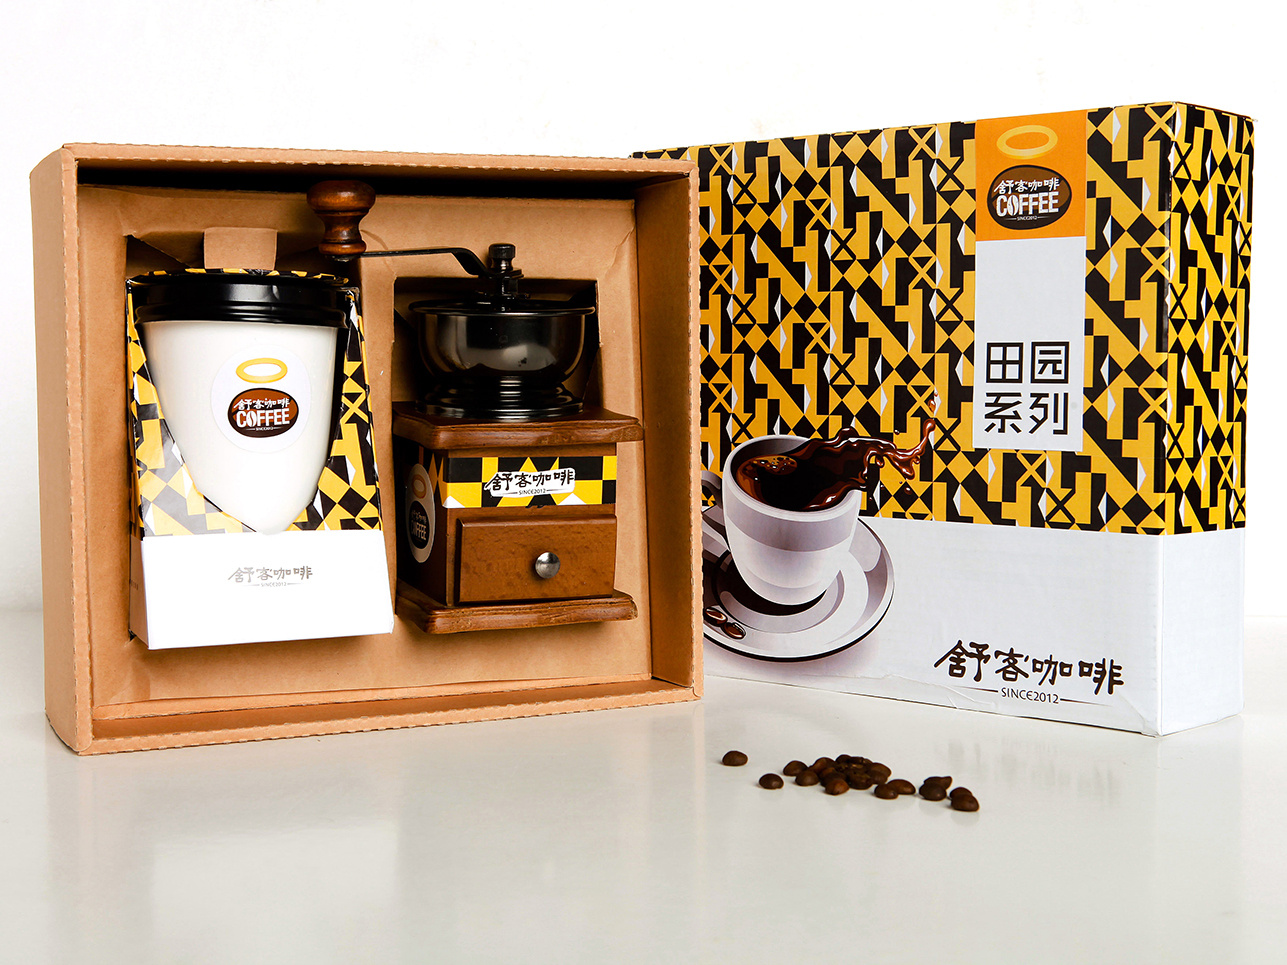 《原创咖啡品牌系列包装》上海理工大学印刷美